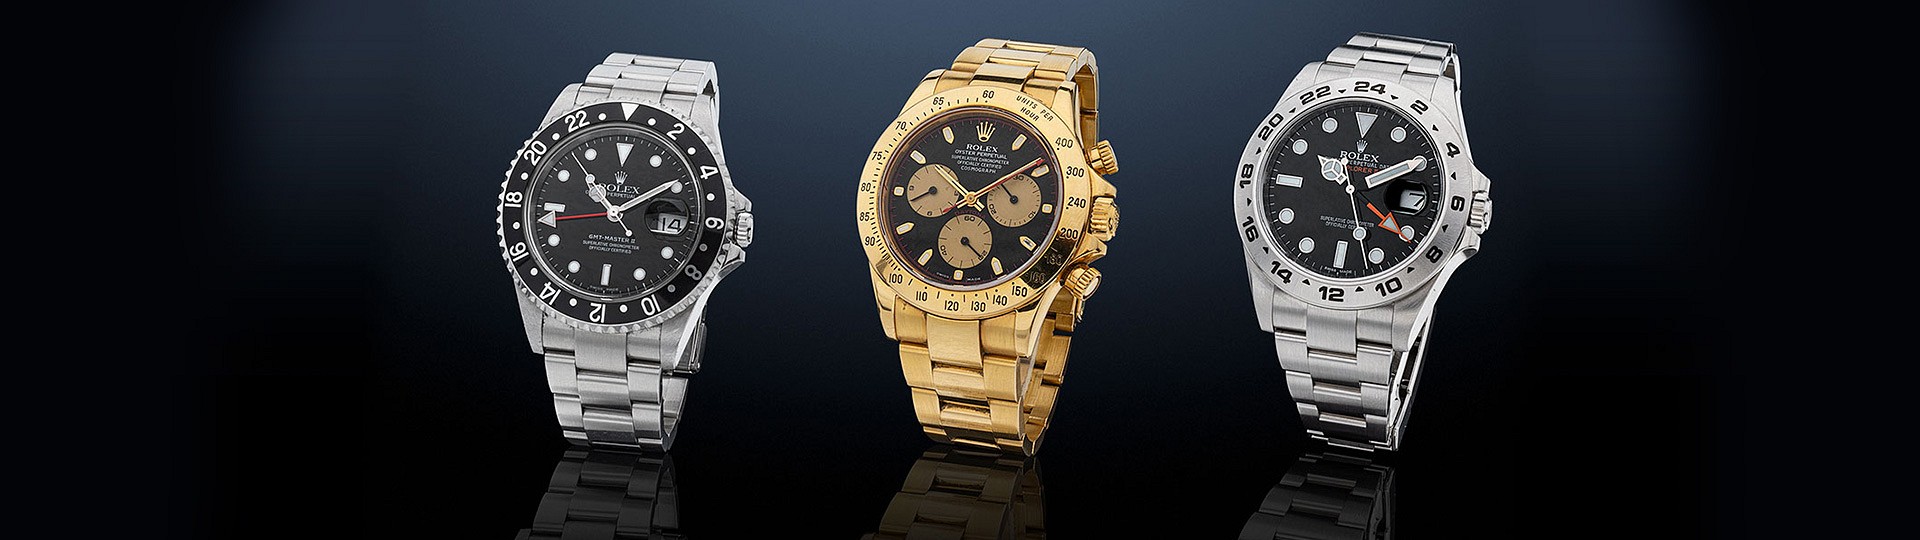 Subasta de Relojes y Joyería | Watches and Jewelry Auction by Morton Subastas